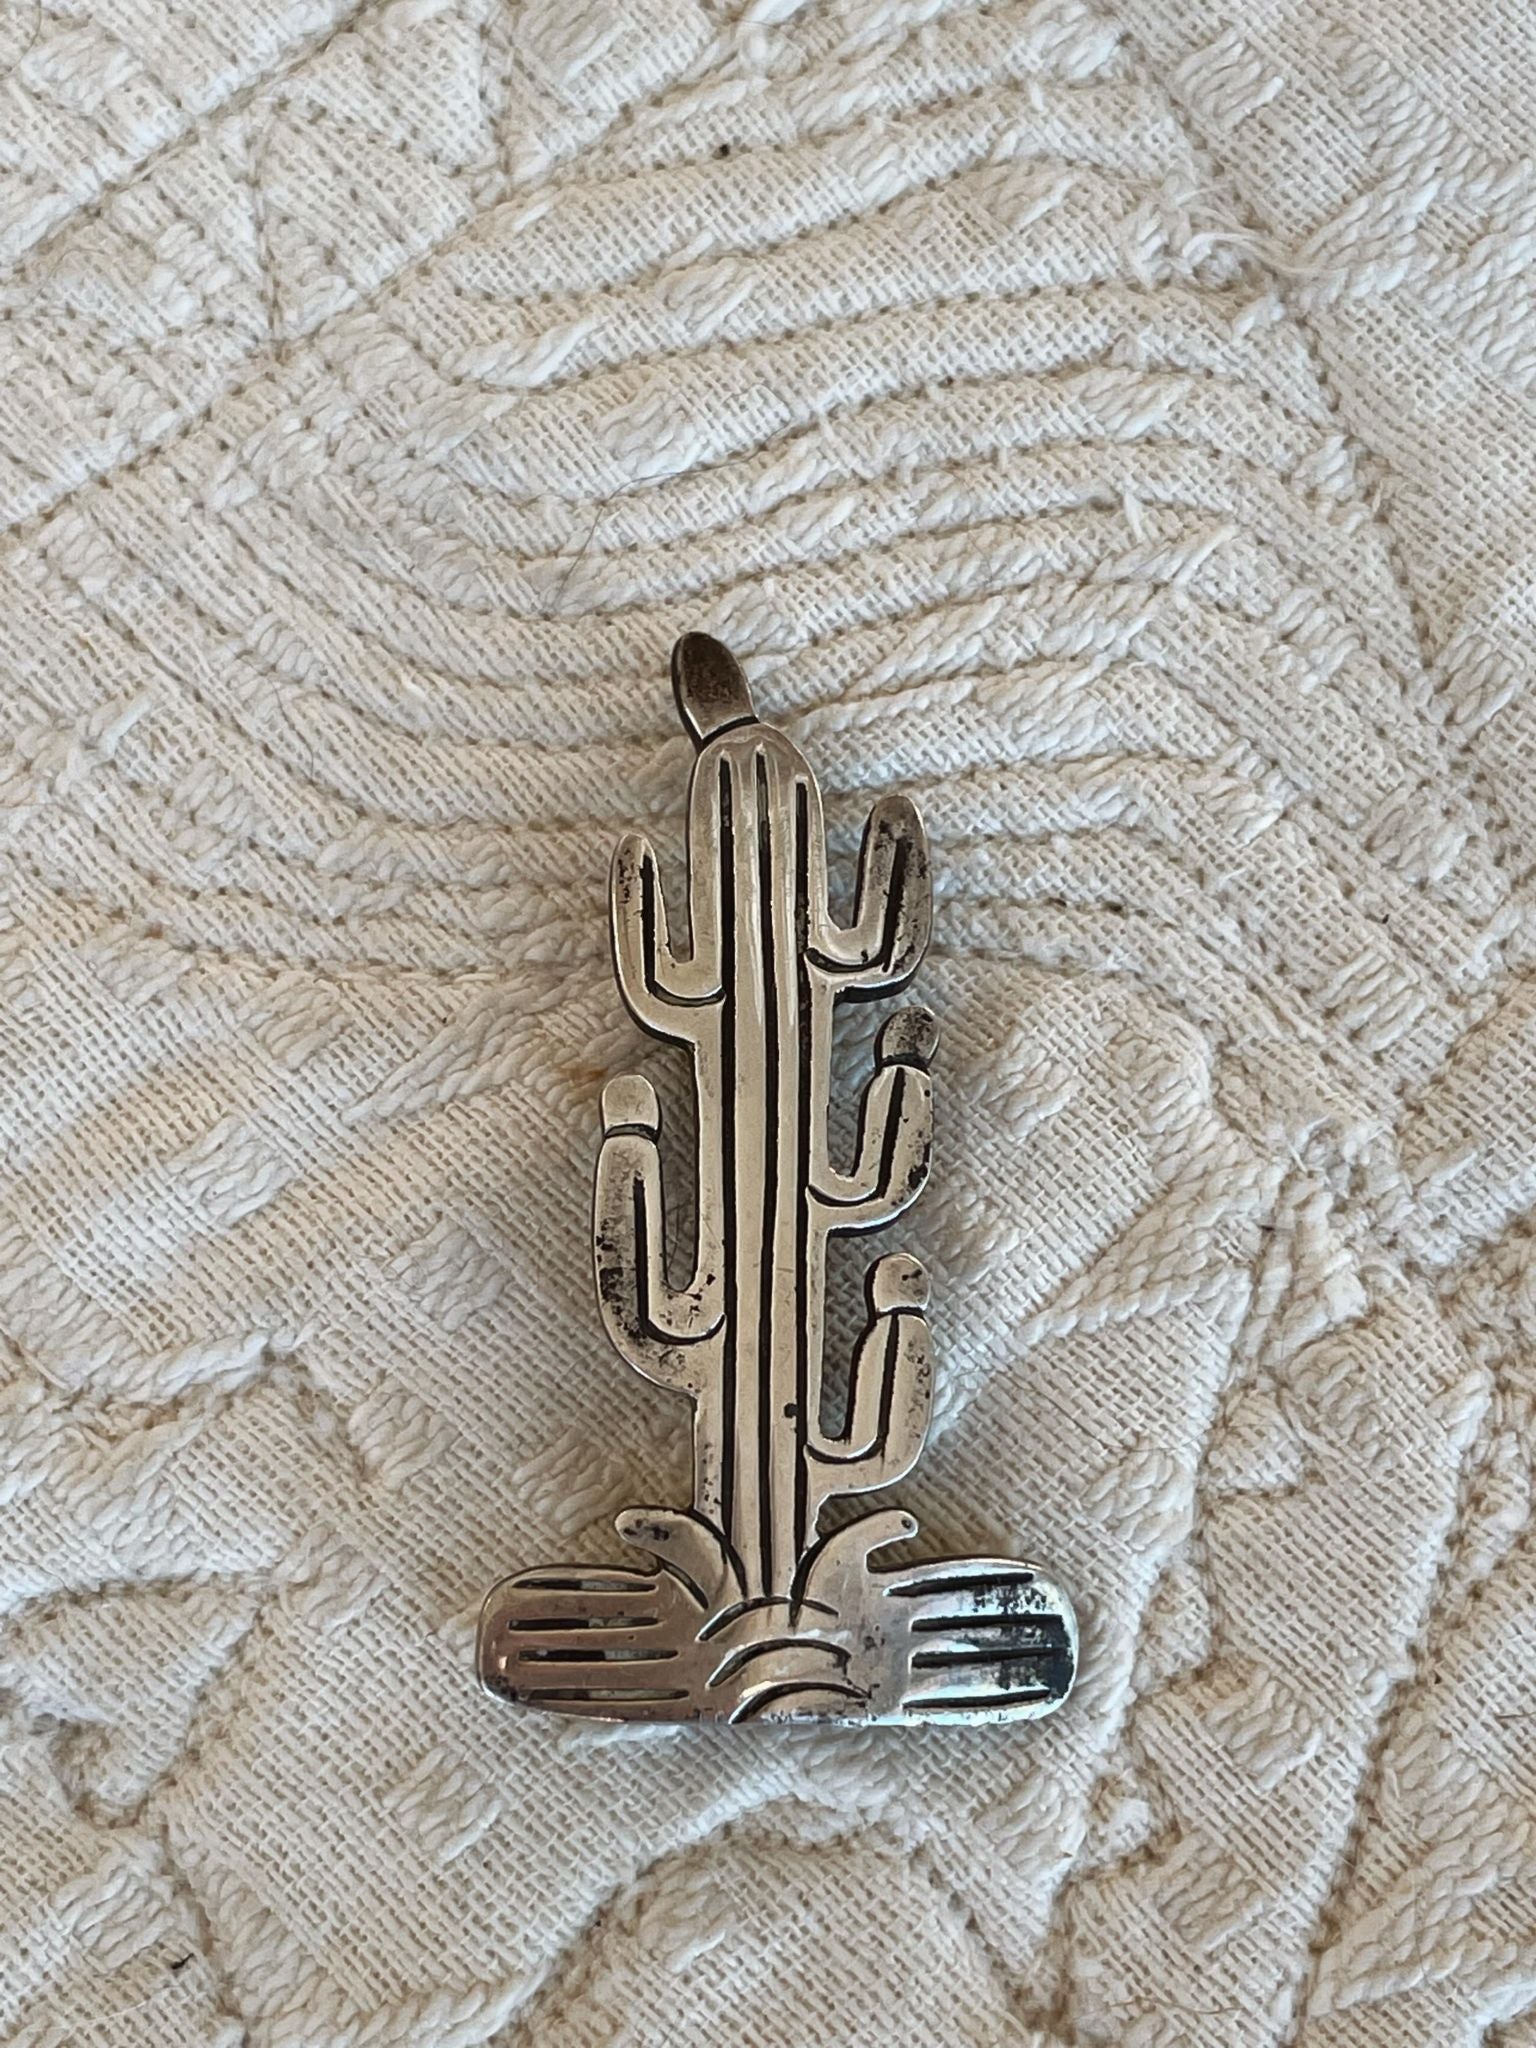 Vintage Saguaro Cactus Hat Pin